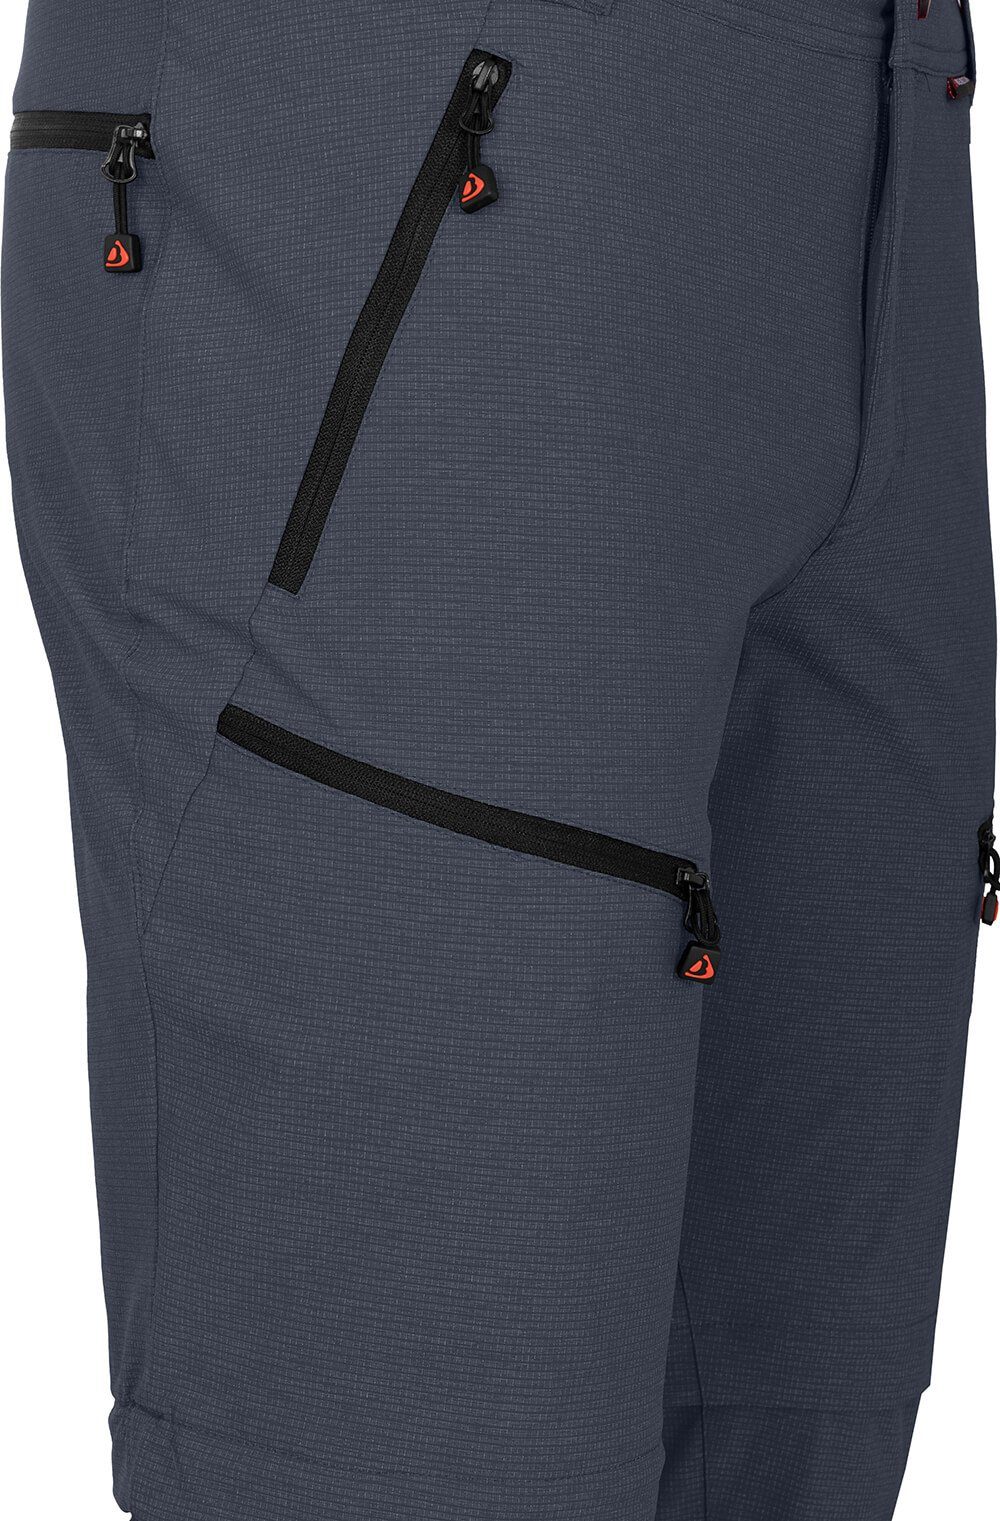 Bergson Zip-off-Hose Herren elastisch, robust, Normalgrößen, grau/blau LEBIKO Zipp-Off Wanderhose